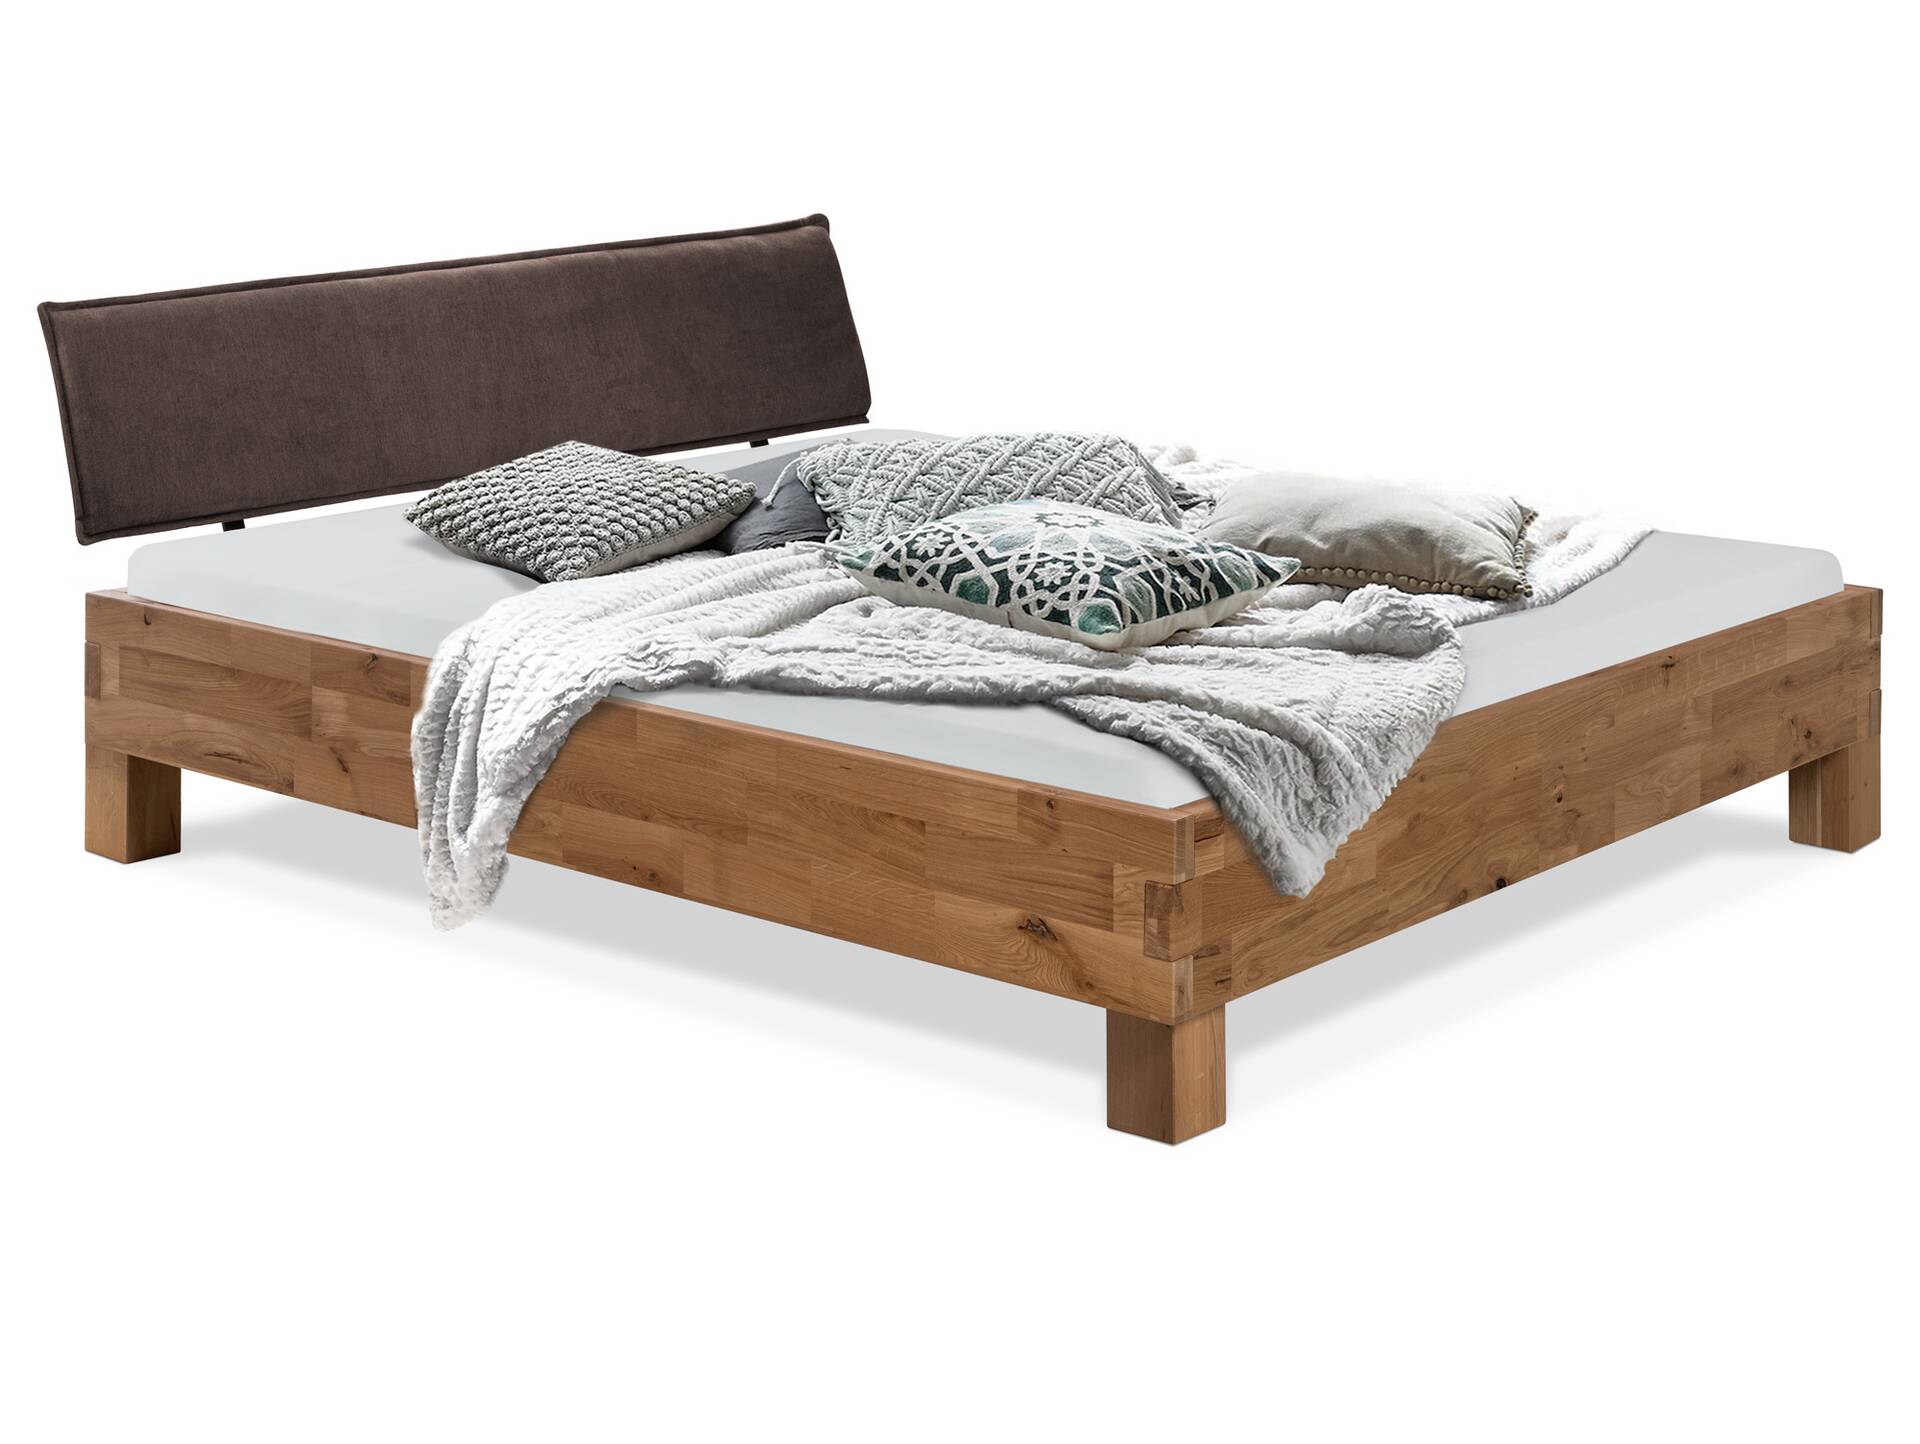 CORDINO 4-Fuß-Bett aus Eiche mit Polster-Kopfteil, Material Massivholz 200 x 200 cm | Eiche lackiert | Stoff Braun | gebürstet